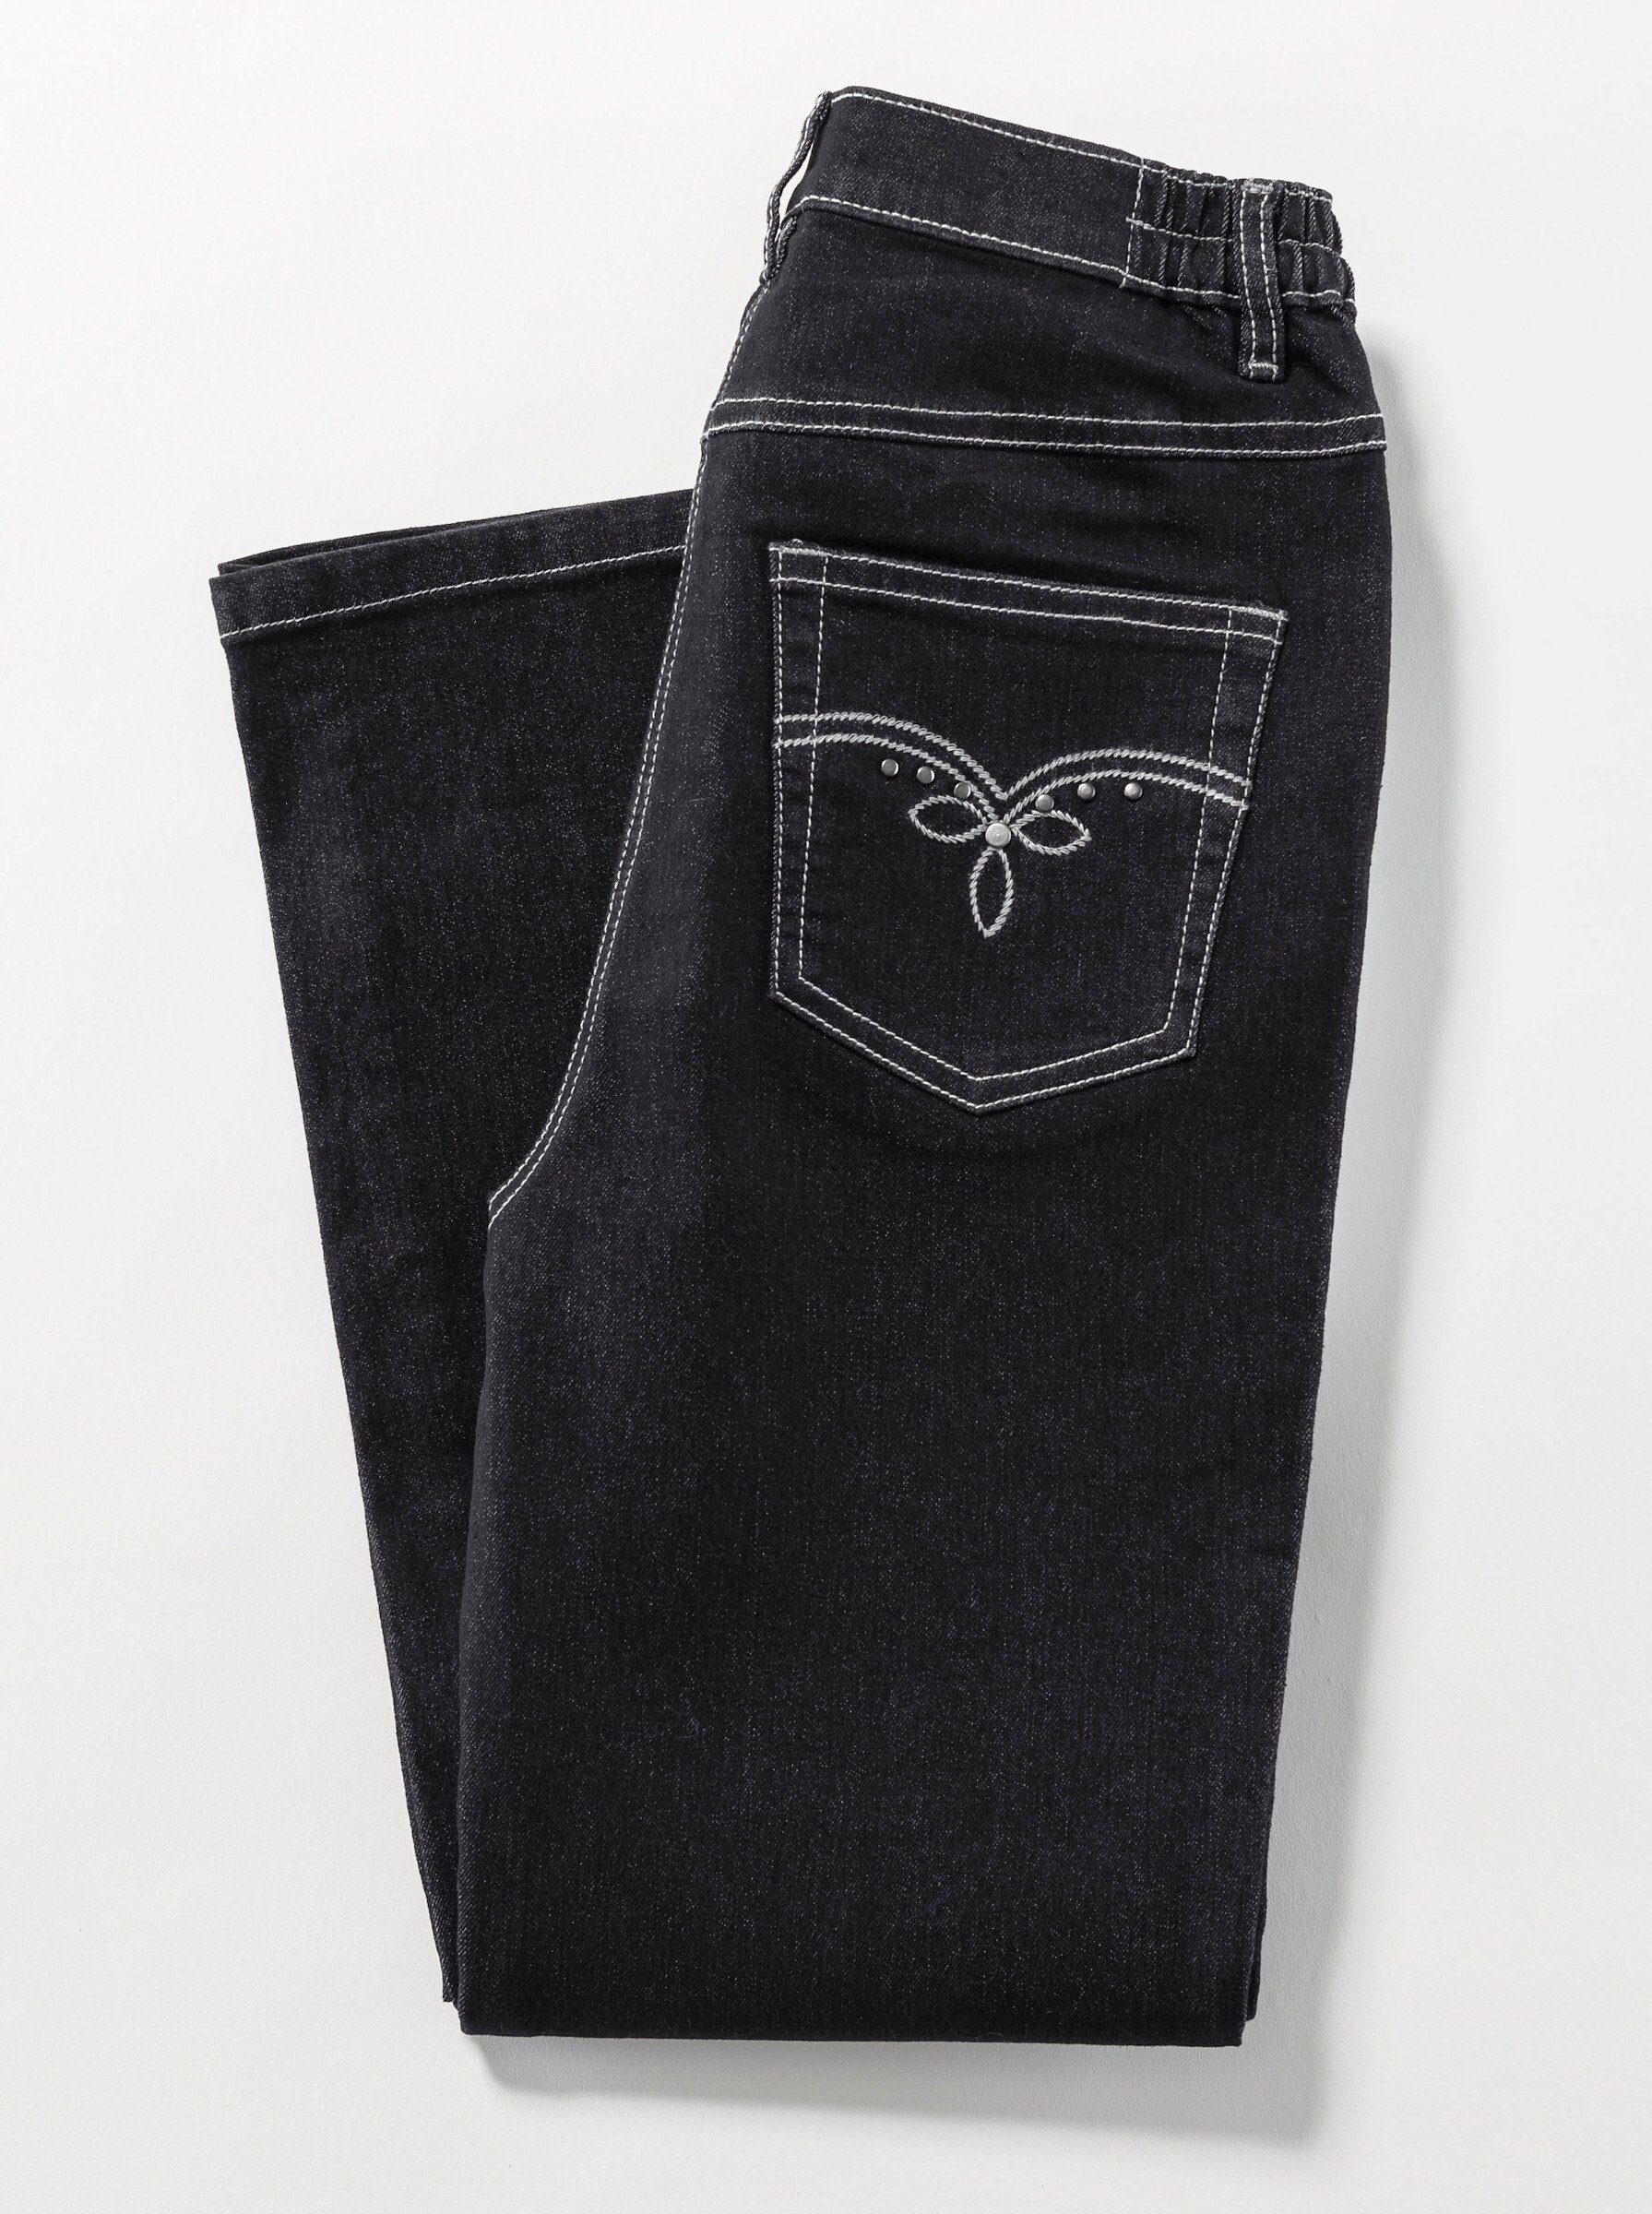 Sieh Jeans an! Bequeme black-denim